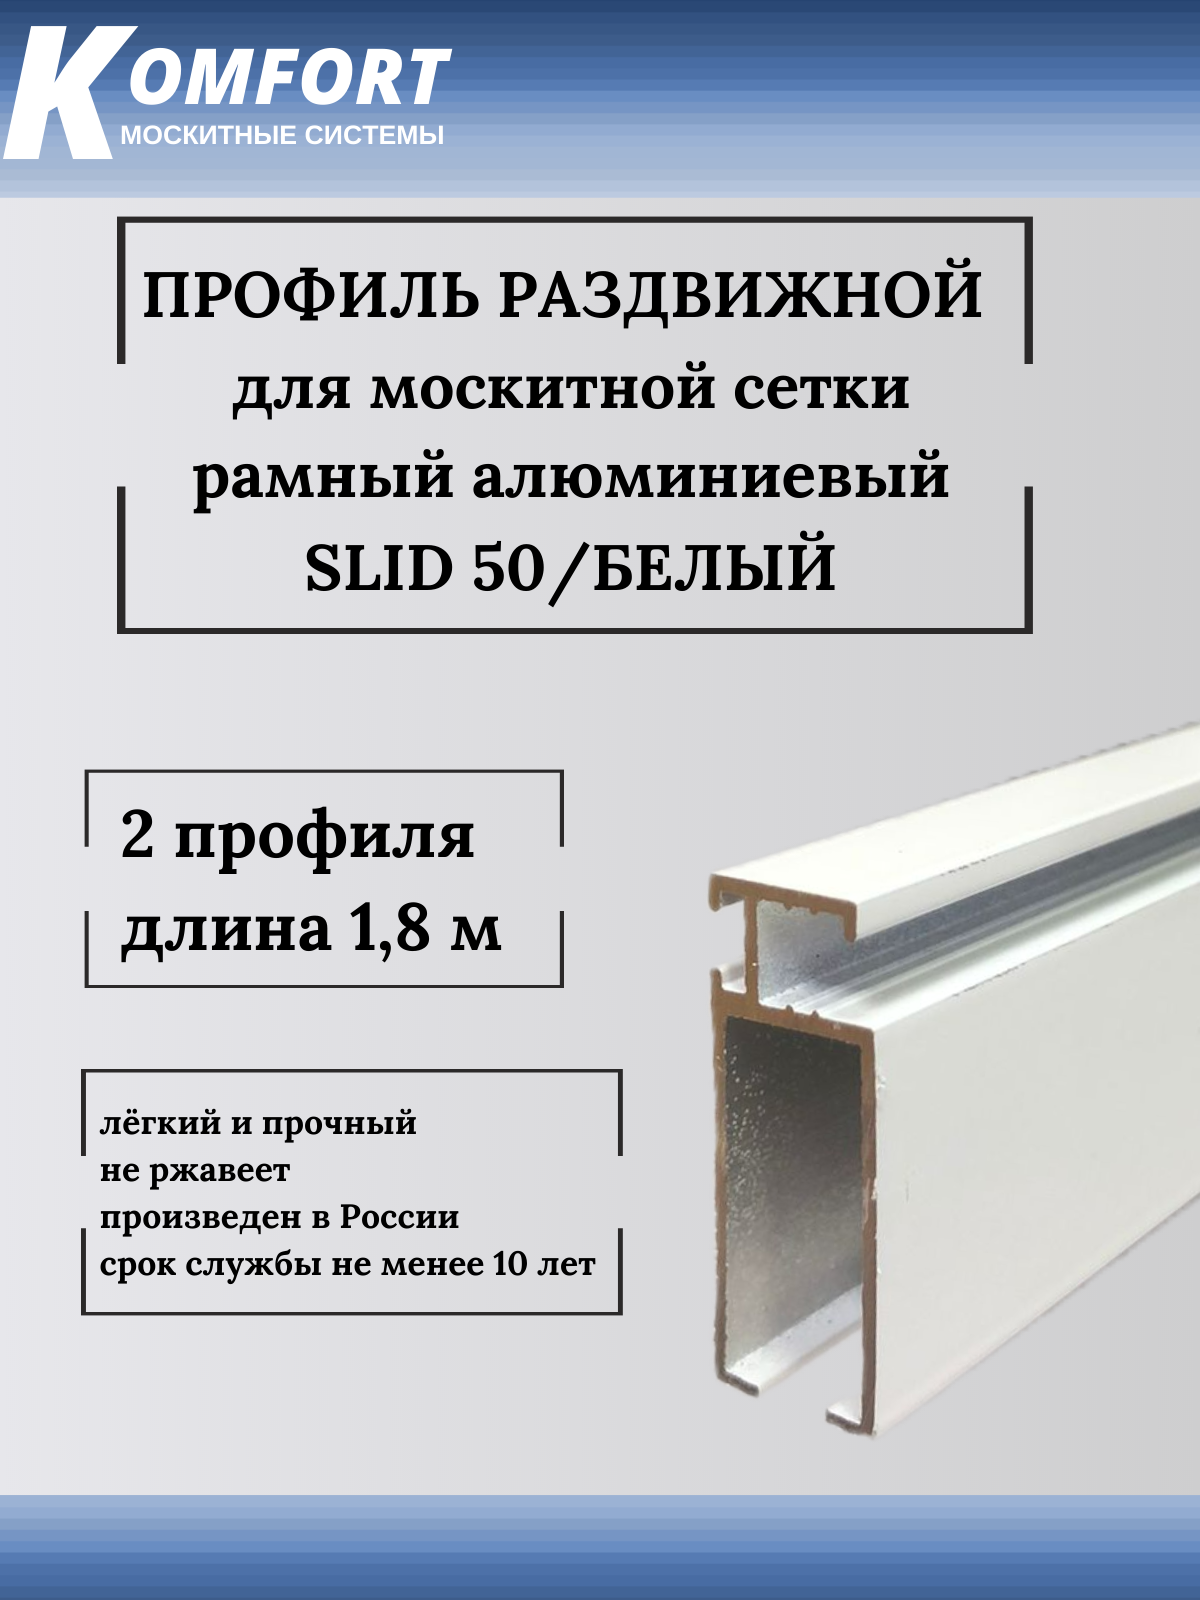 Профиль для москитной сетки рамный раздвижной SLID 50 белый 1,8 м 2 шт